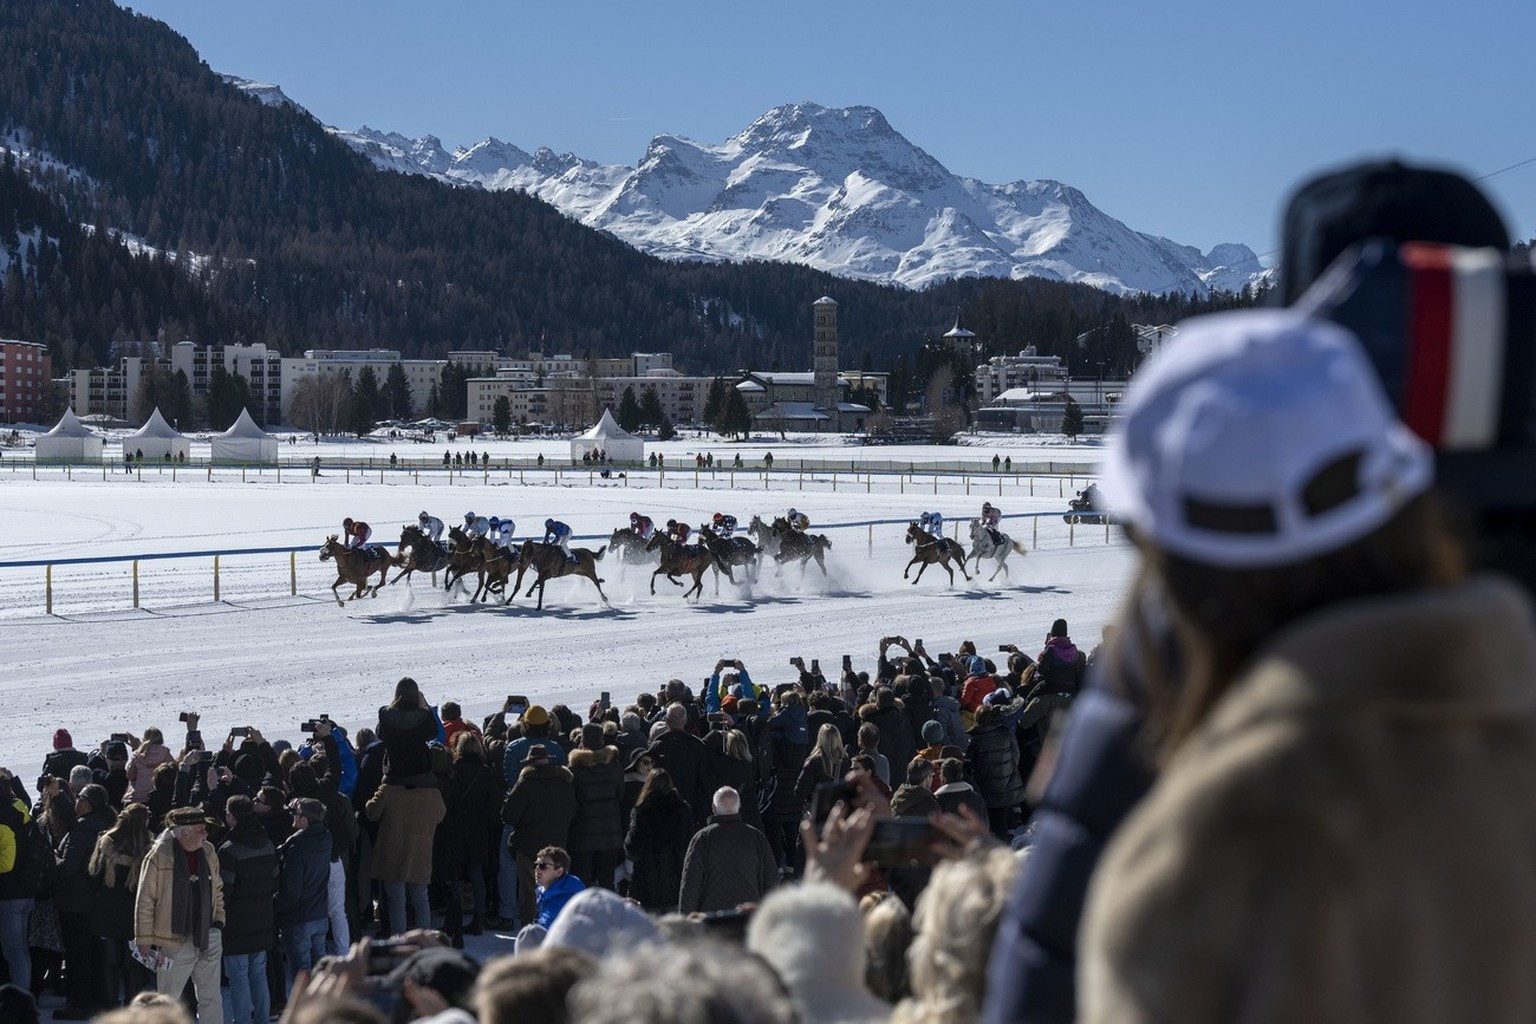 Zuschauerinnen und Zuschauer verfolgen ein Pferderennen, fotografiert im Rahmen des White Turf, am Sonntag, 20. Februar 2022 in St. Moritz. (KEYSTONE/Christian Beutler)